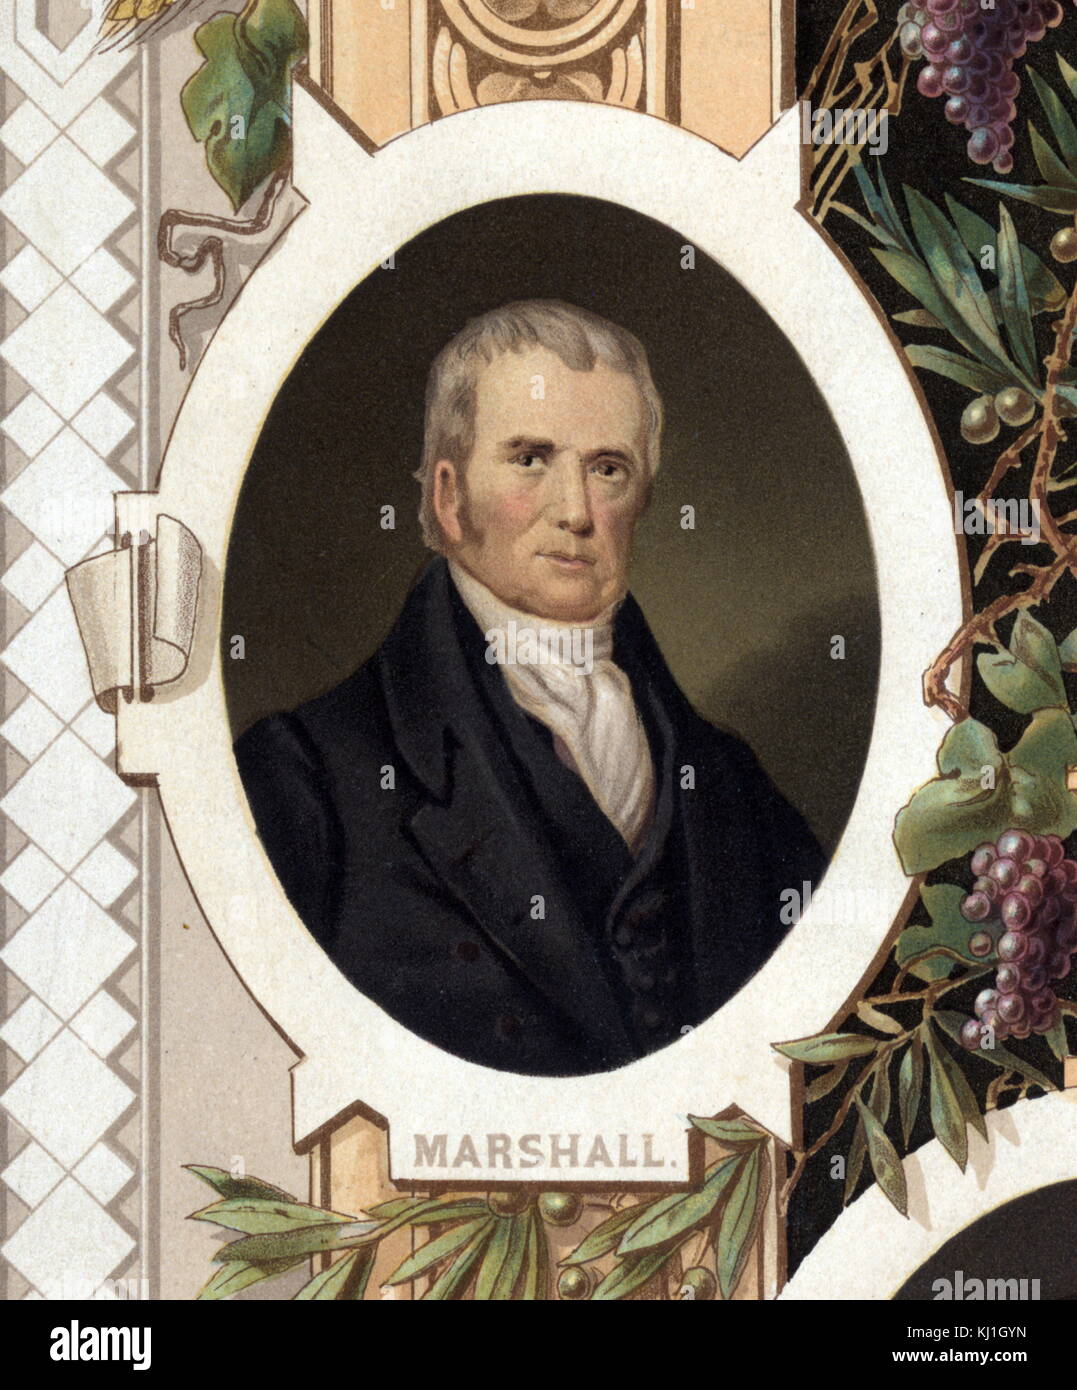 John Marshall (1755 - 1835) il capo della Corte suprema degli Stati Uniti (1801-1835). Precedentemente, Marshall è stato un leader del Partito federalista in Virginia e servito nella Camera dei rappresentanti degli Stati Uniti da 1799 a 1800. Egli fu Segretario di Stato sotto il Presidente John Adams dal 1800 al 1801 presi da una illustrazione del 1800 intitolato 'Distinguished muratori della rivoluzione" Foto Stock